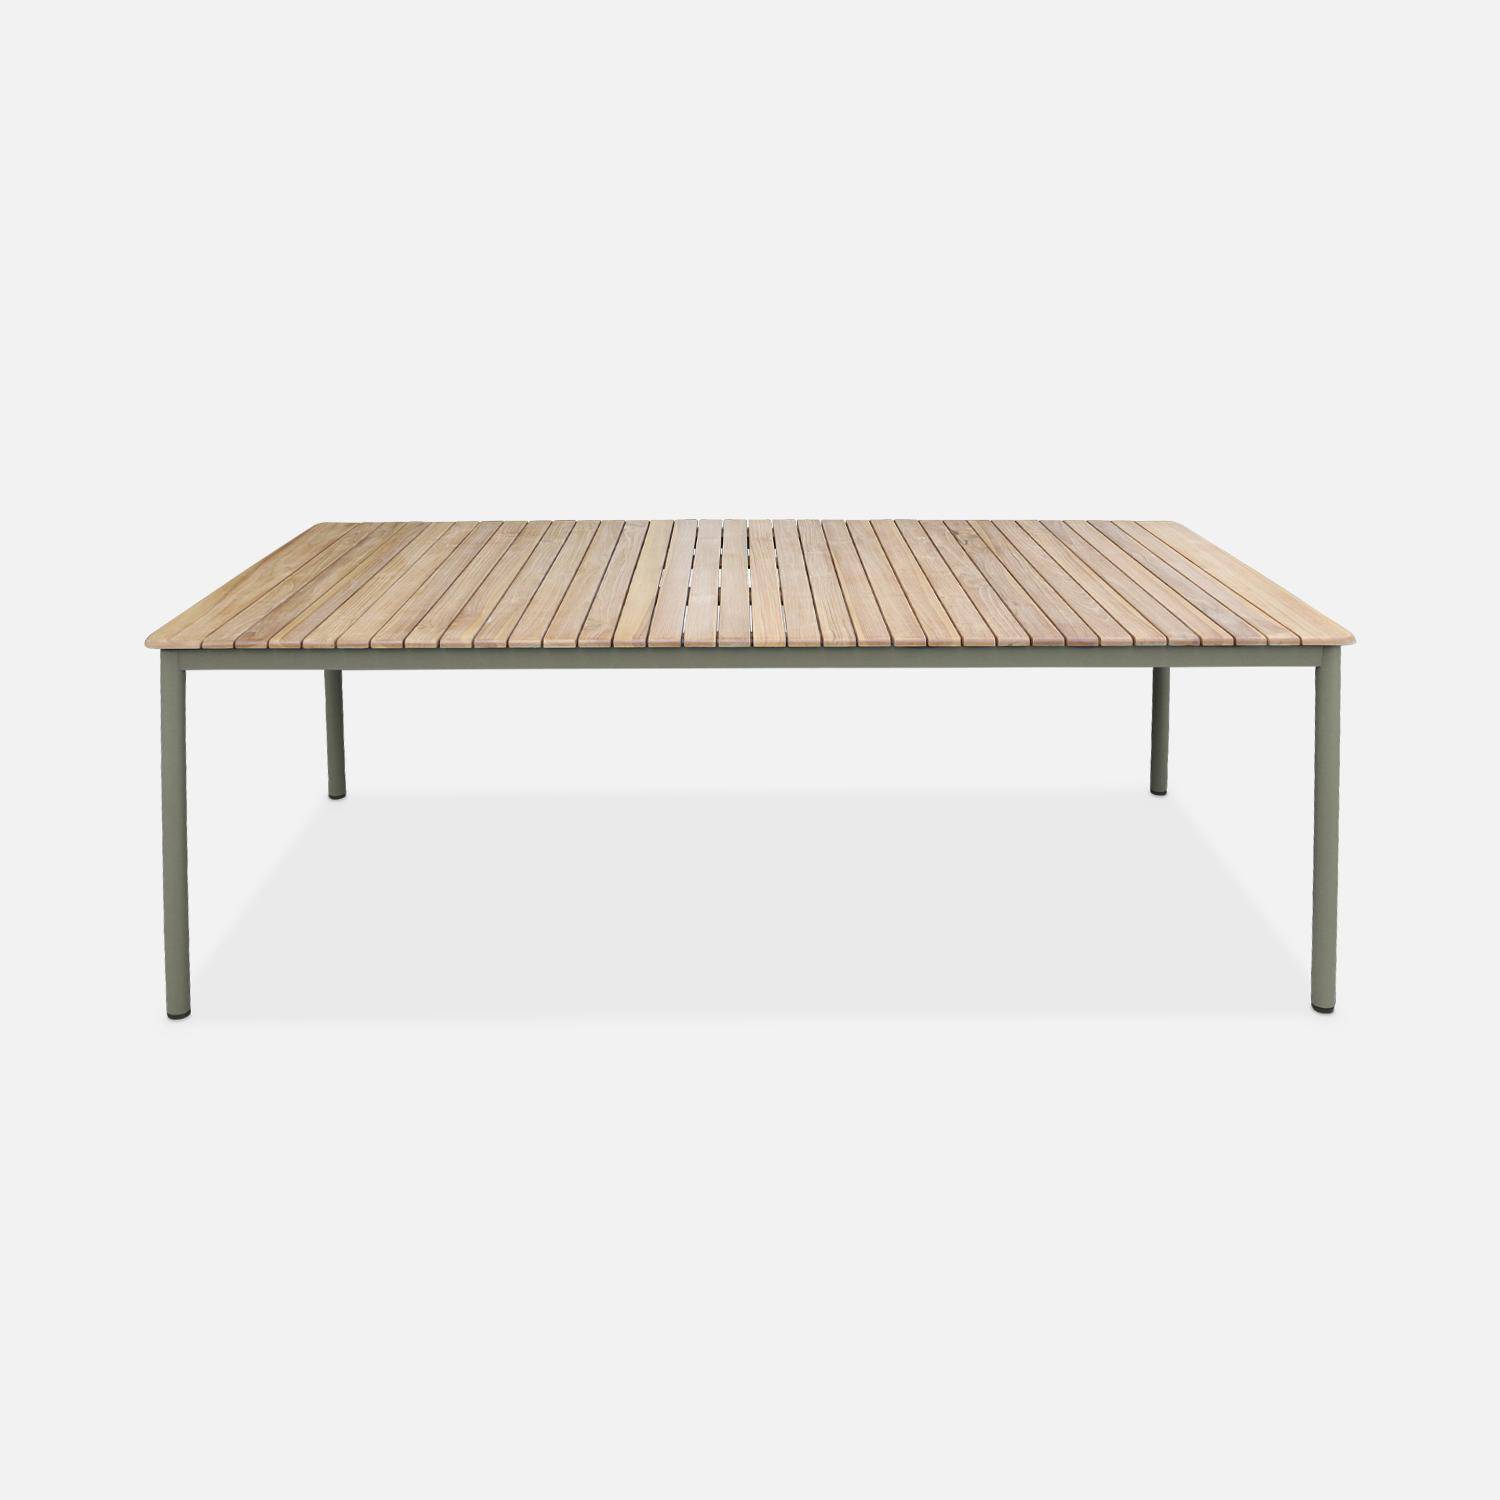 Gartentisch aus Teakholz, 210 x 100 cm, Gestell aus rostfreiem Stahl, salbeigrün , 8 Personen - Gili,sweeek,Photo2